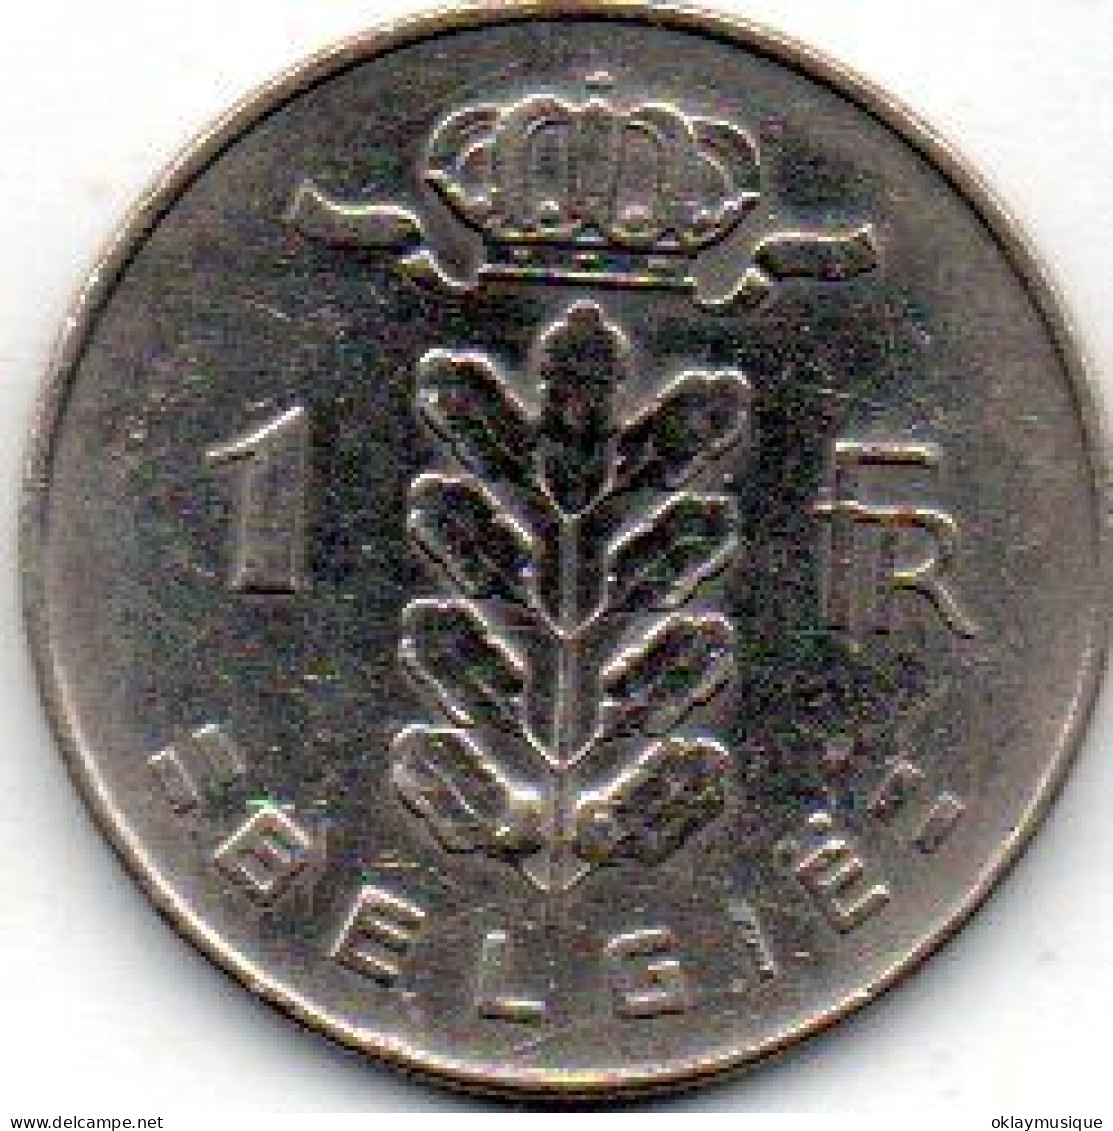 1 Franc (cérès)  1970 - 1 Franc